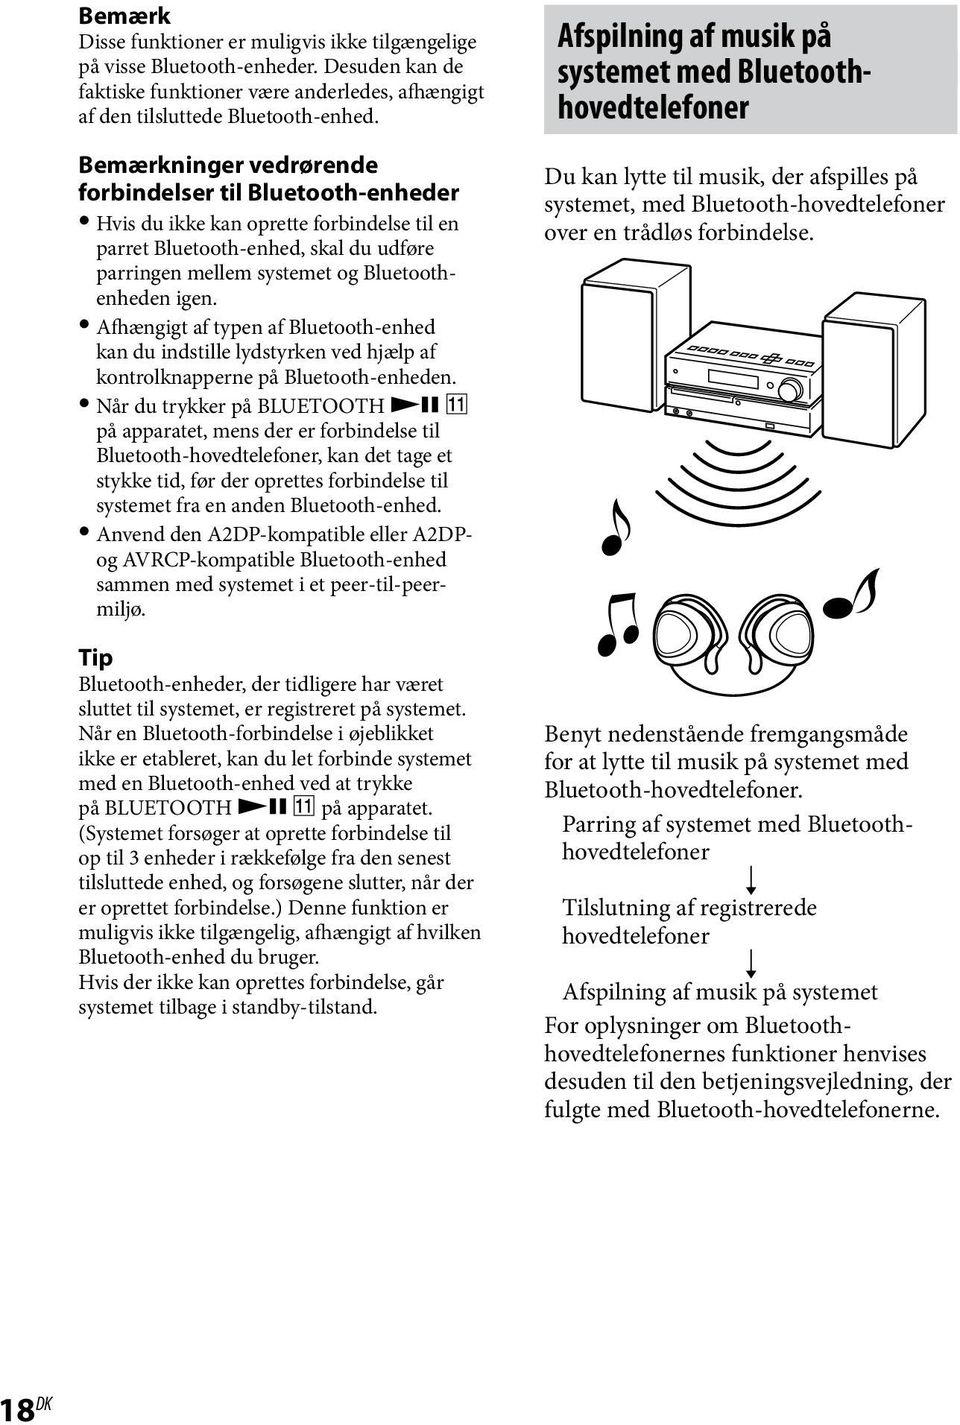 Afhængigt af typen af Bluetooth-enhed kan du indstille lydstyrken ved hjælp af kontrolknapperne på Bluetooth-enheden.